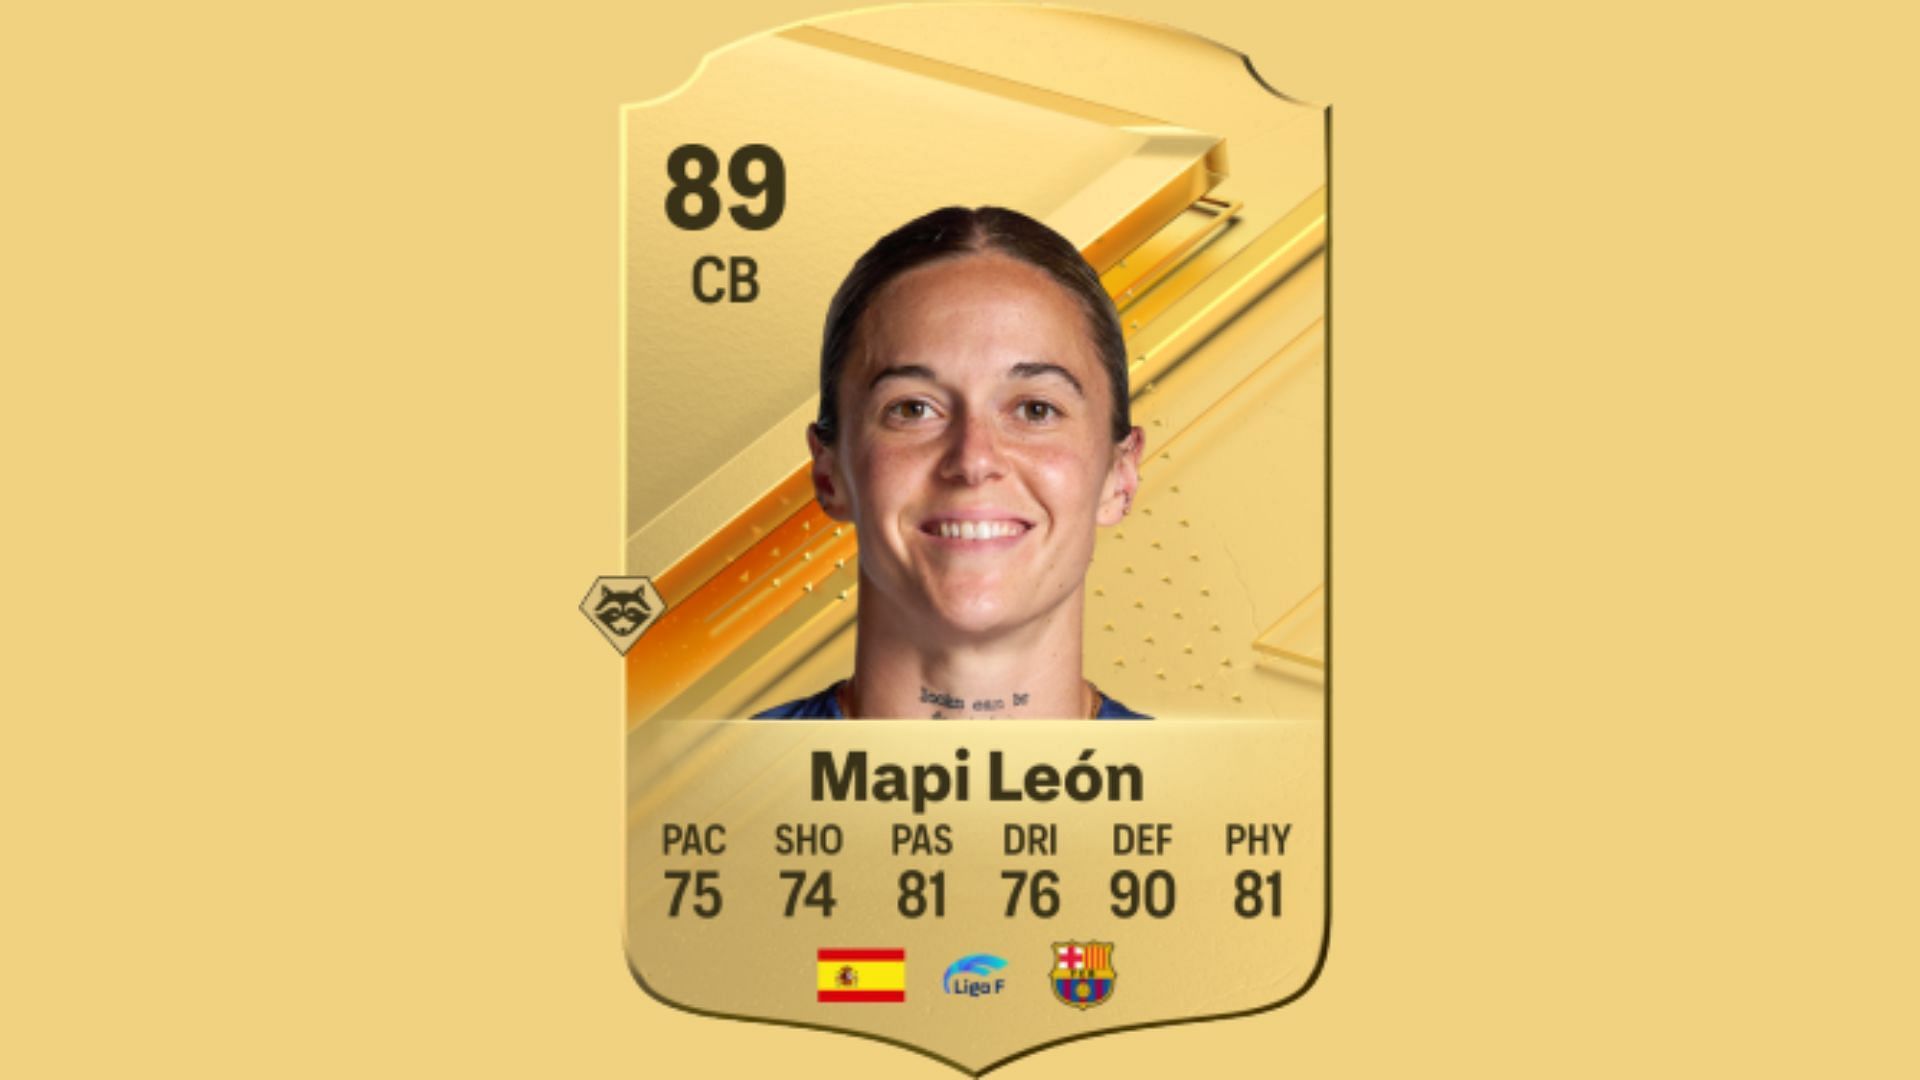 Mapi Leon in EA FC 24 (image via EA Sports)